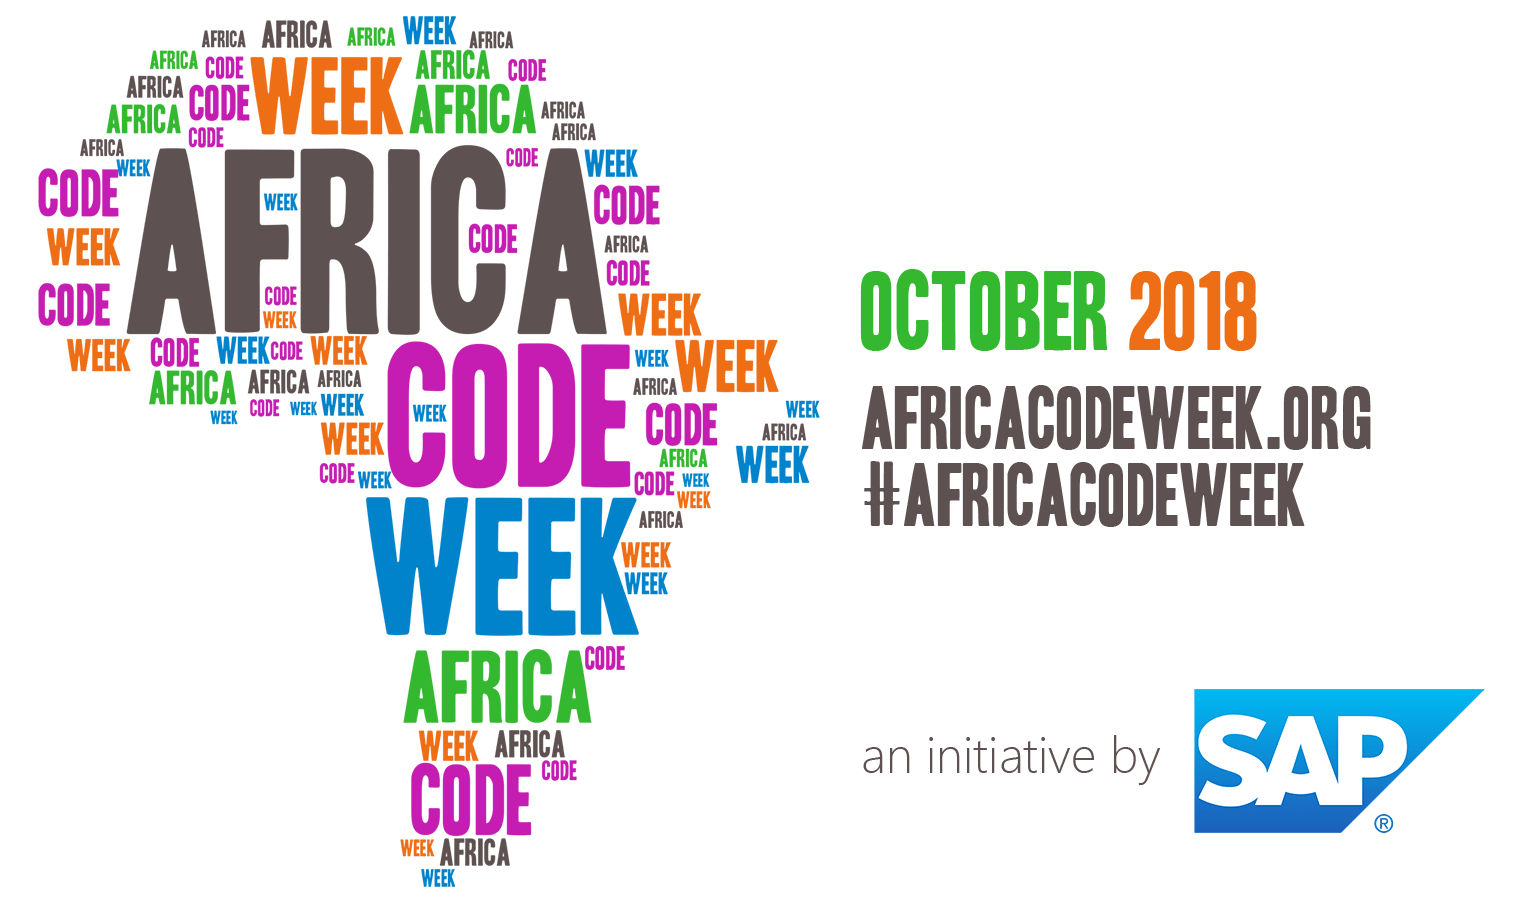 الانخراط المتميز للمغرب في النسخة الرابعة لمبادرة "أسبوع البرمجة في افريقيا" 2018